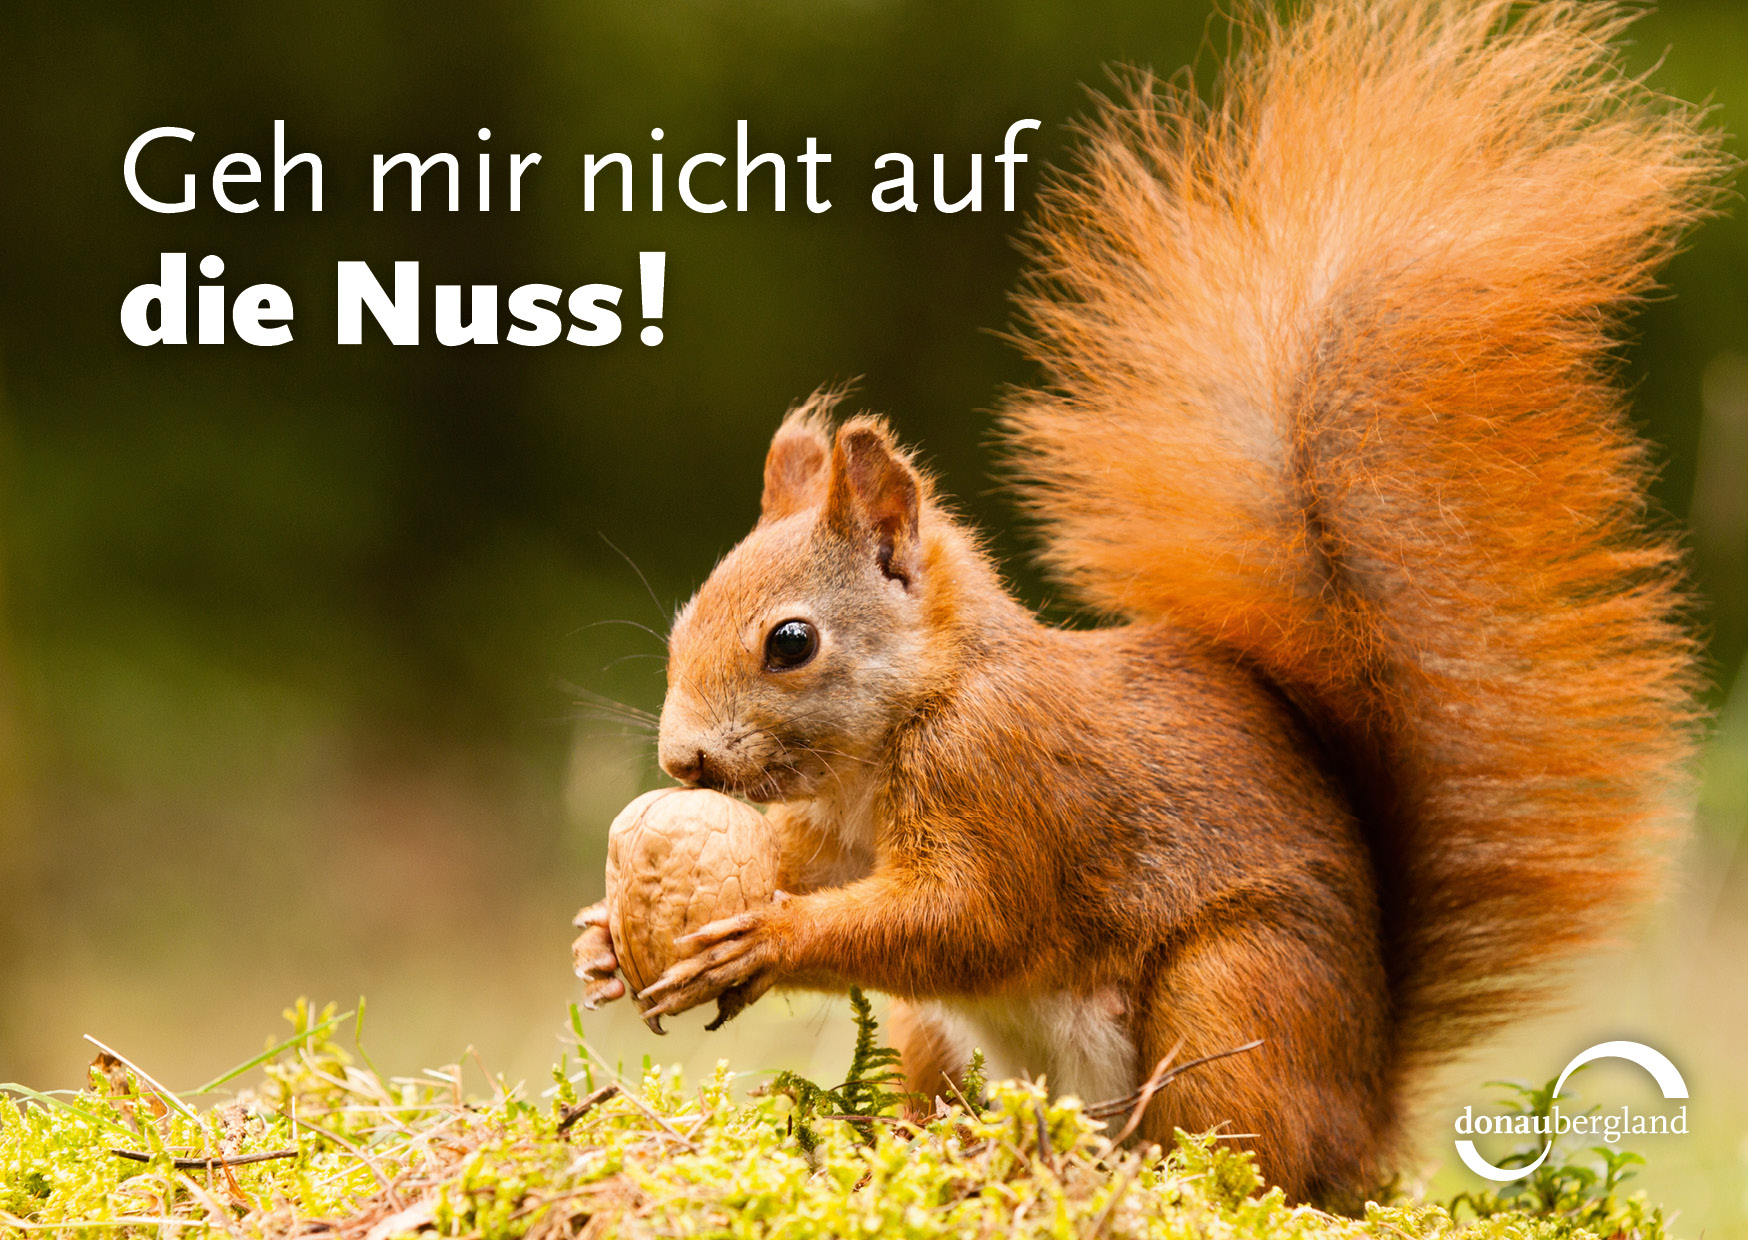 Donaubergland Postkartenmotiv mit Eichhörnchen, das an einer Walnuss riecht.